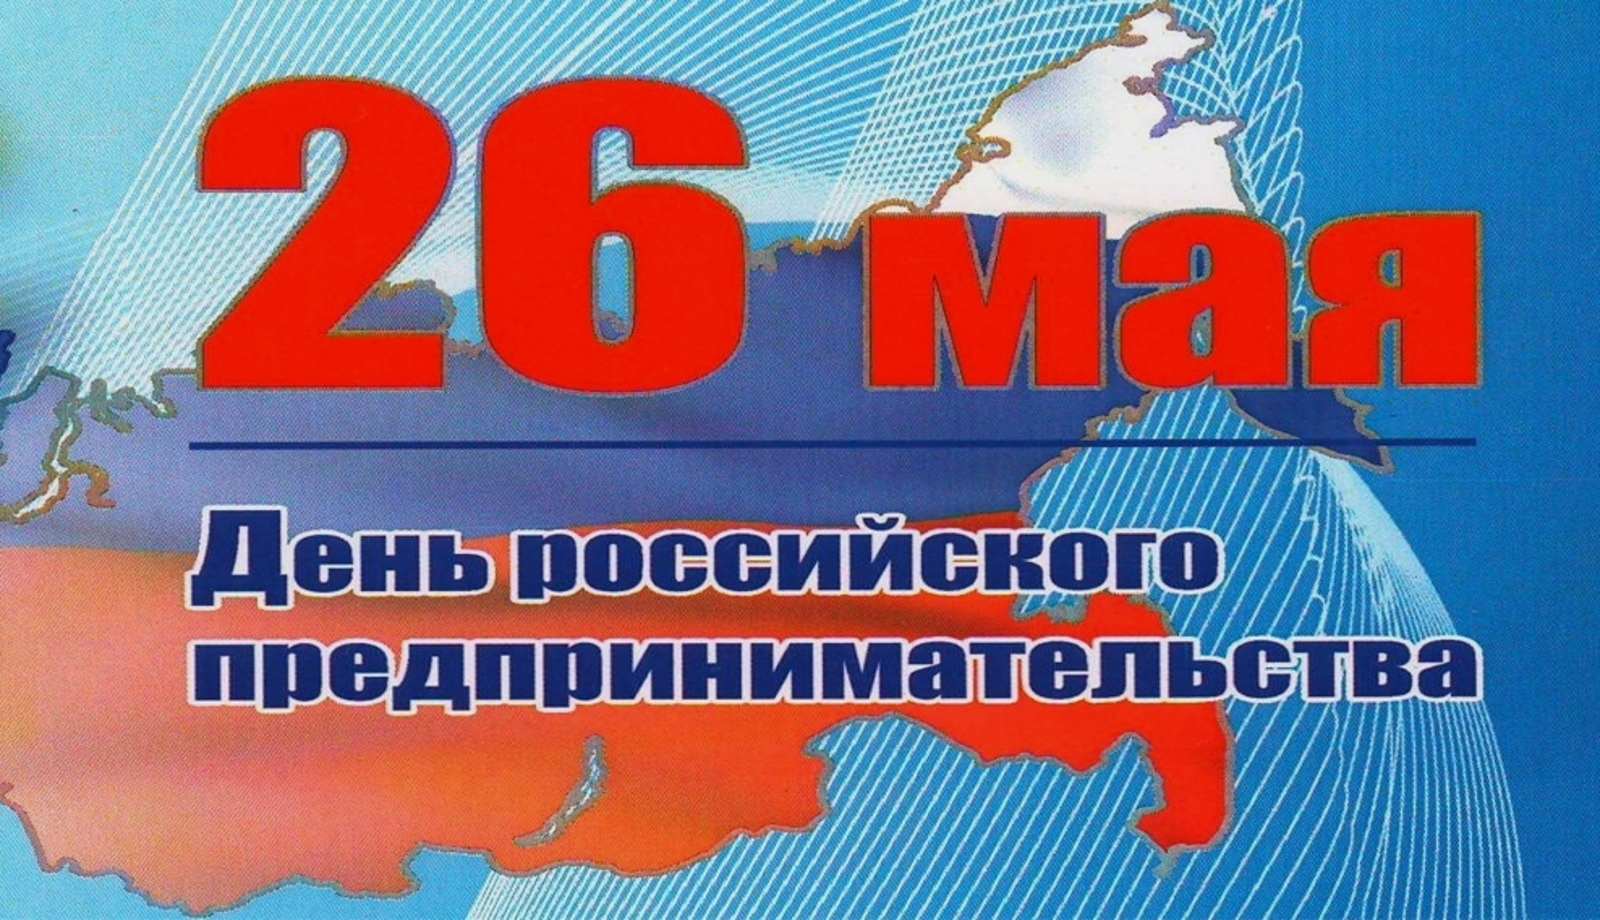 Сегодня - День российского предпринимательства